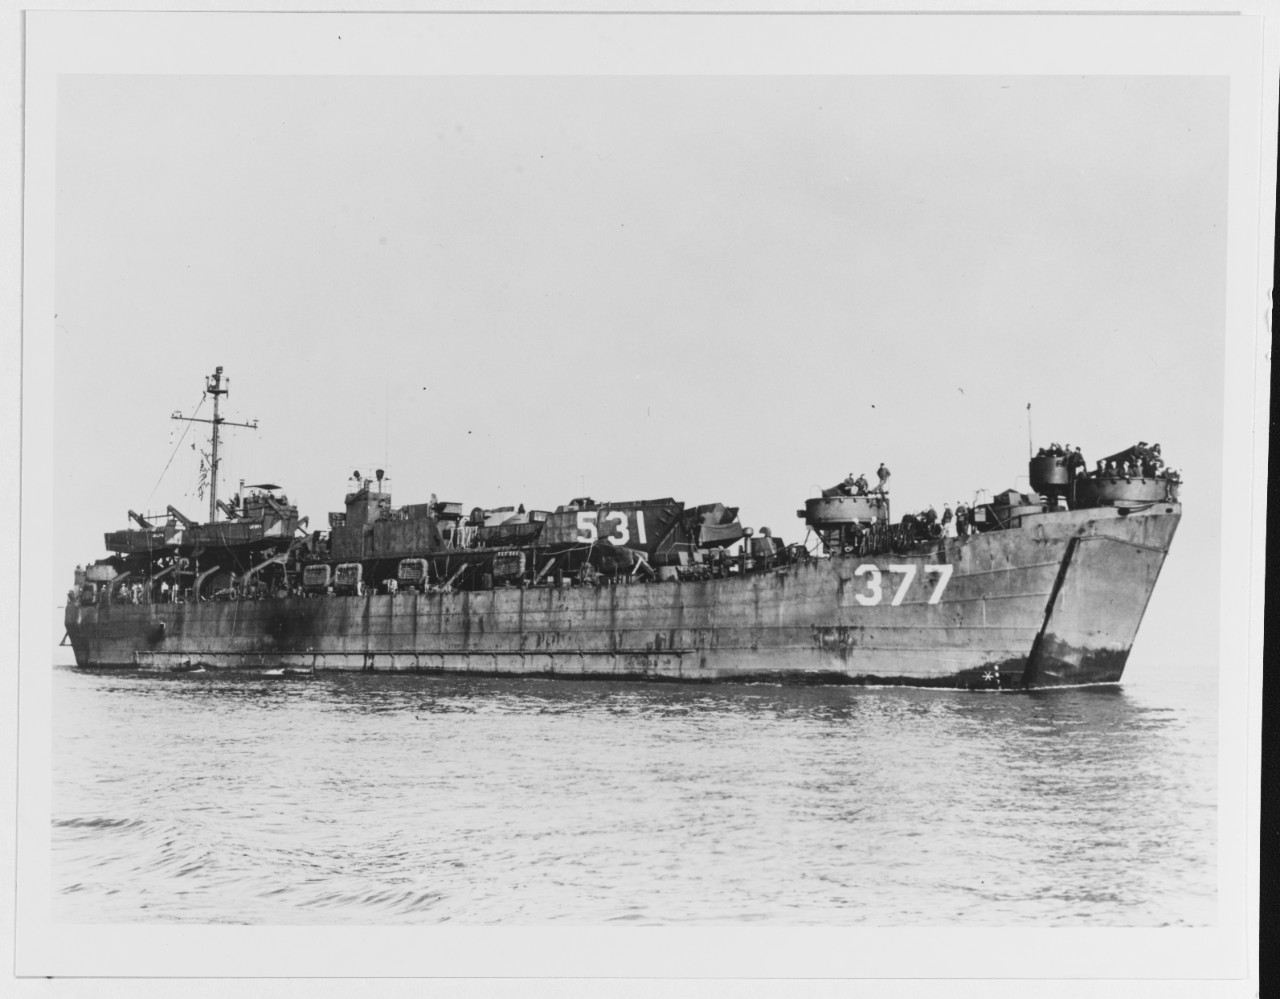 USS LST-377